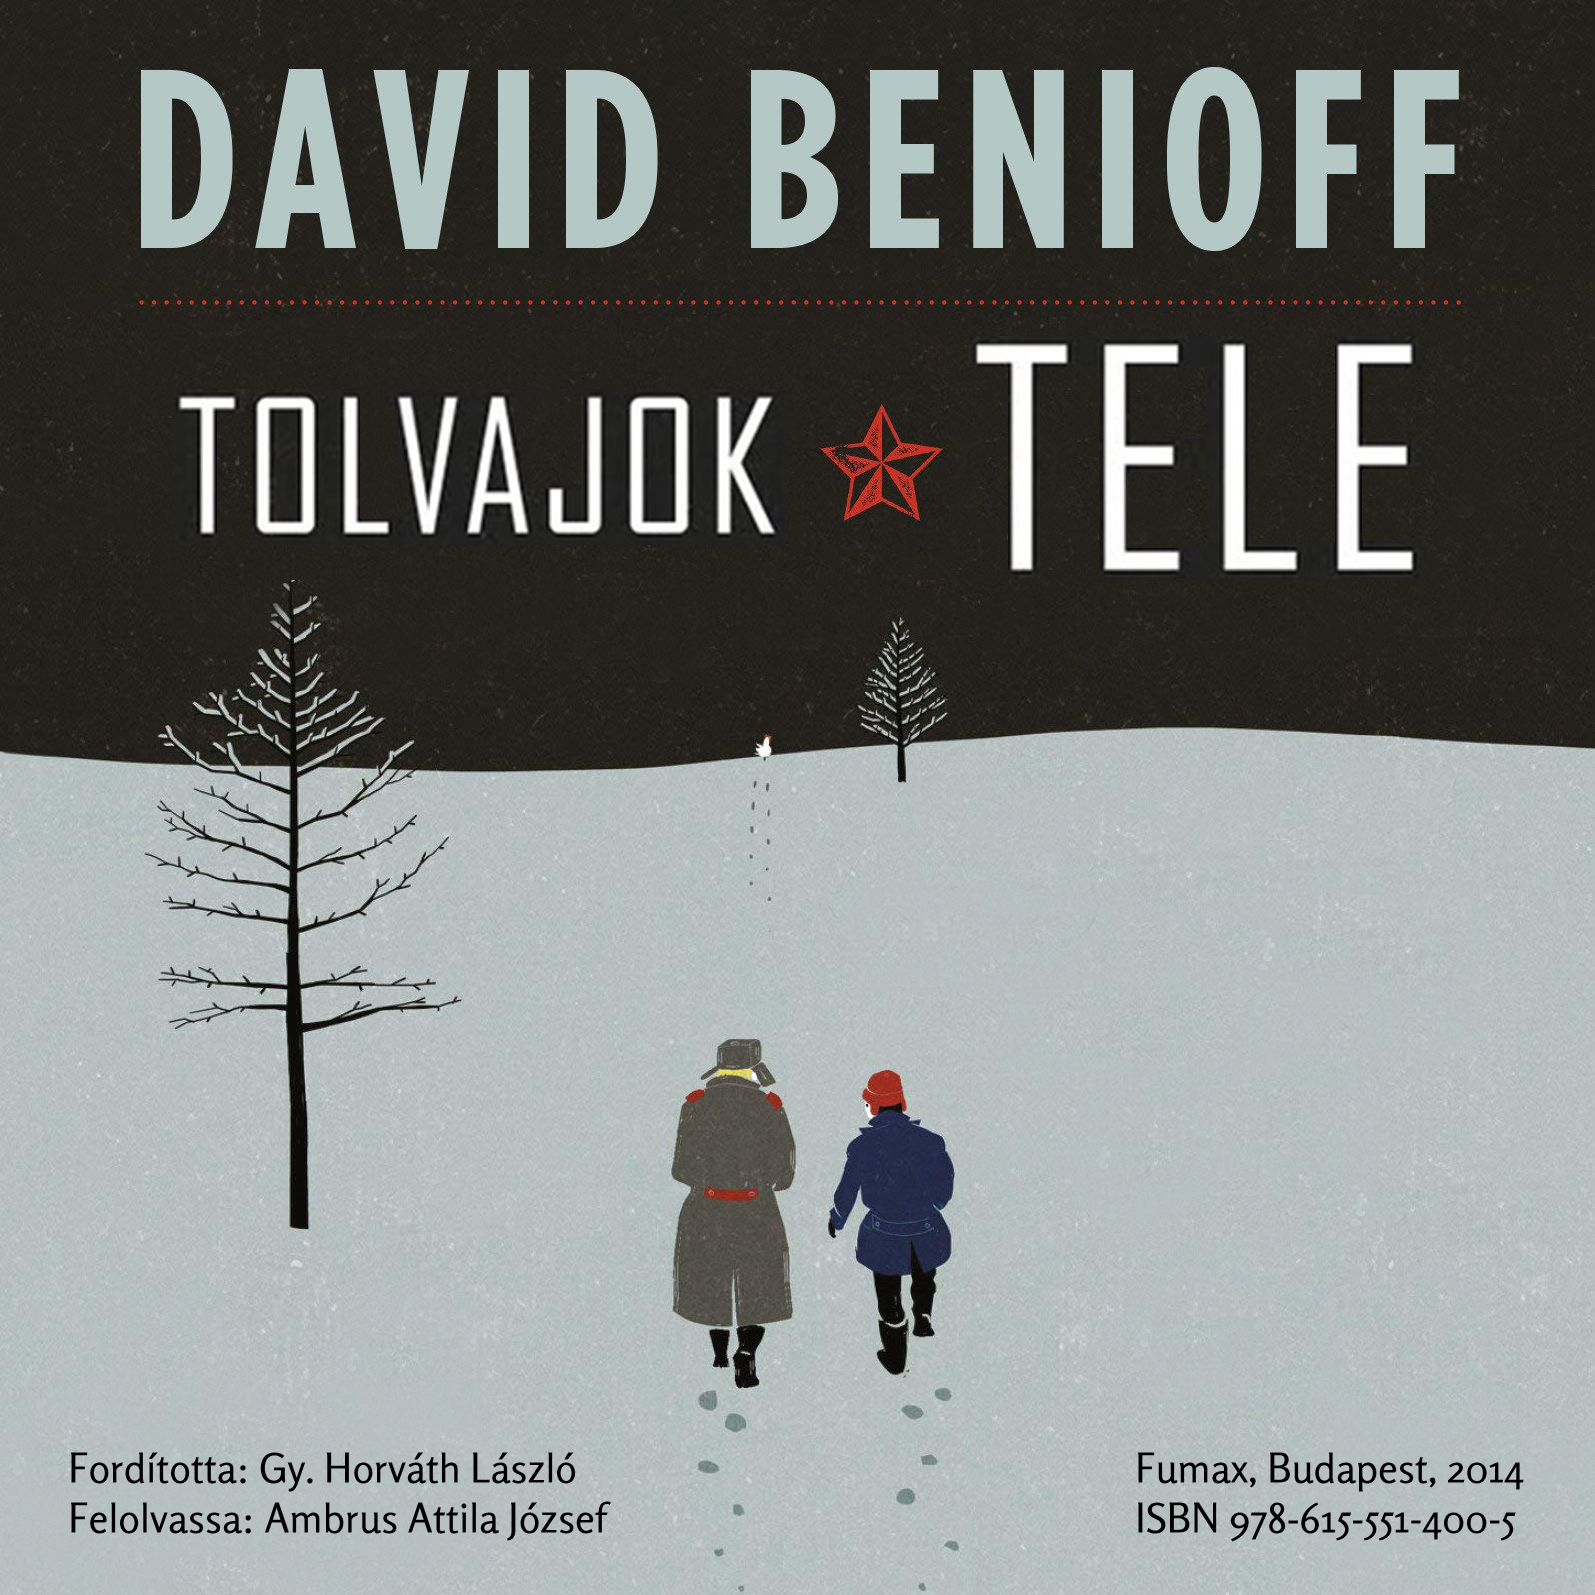 Szerző: David Benioff | Cím: Tolvajok ​tele | A hangoskönyv kiadása: Magánkiadás, Pecs, 2022.